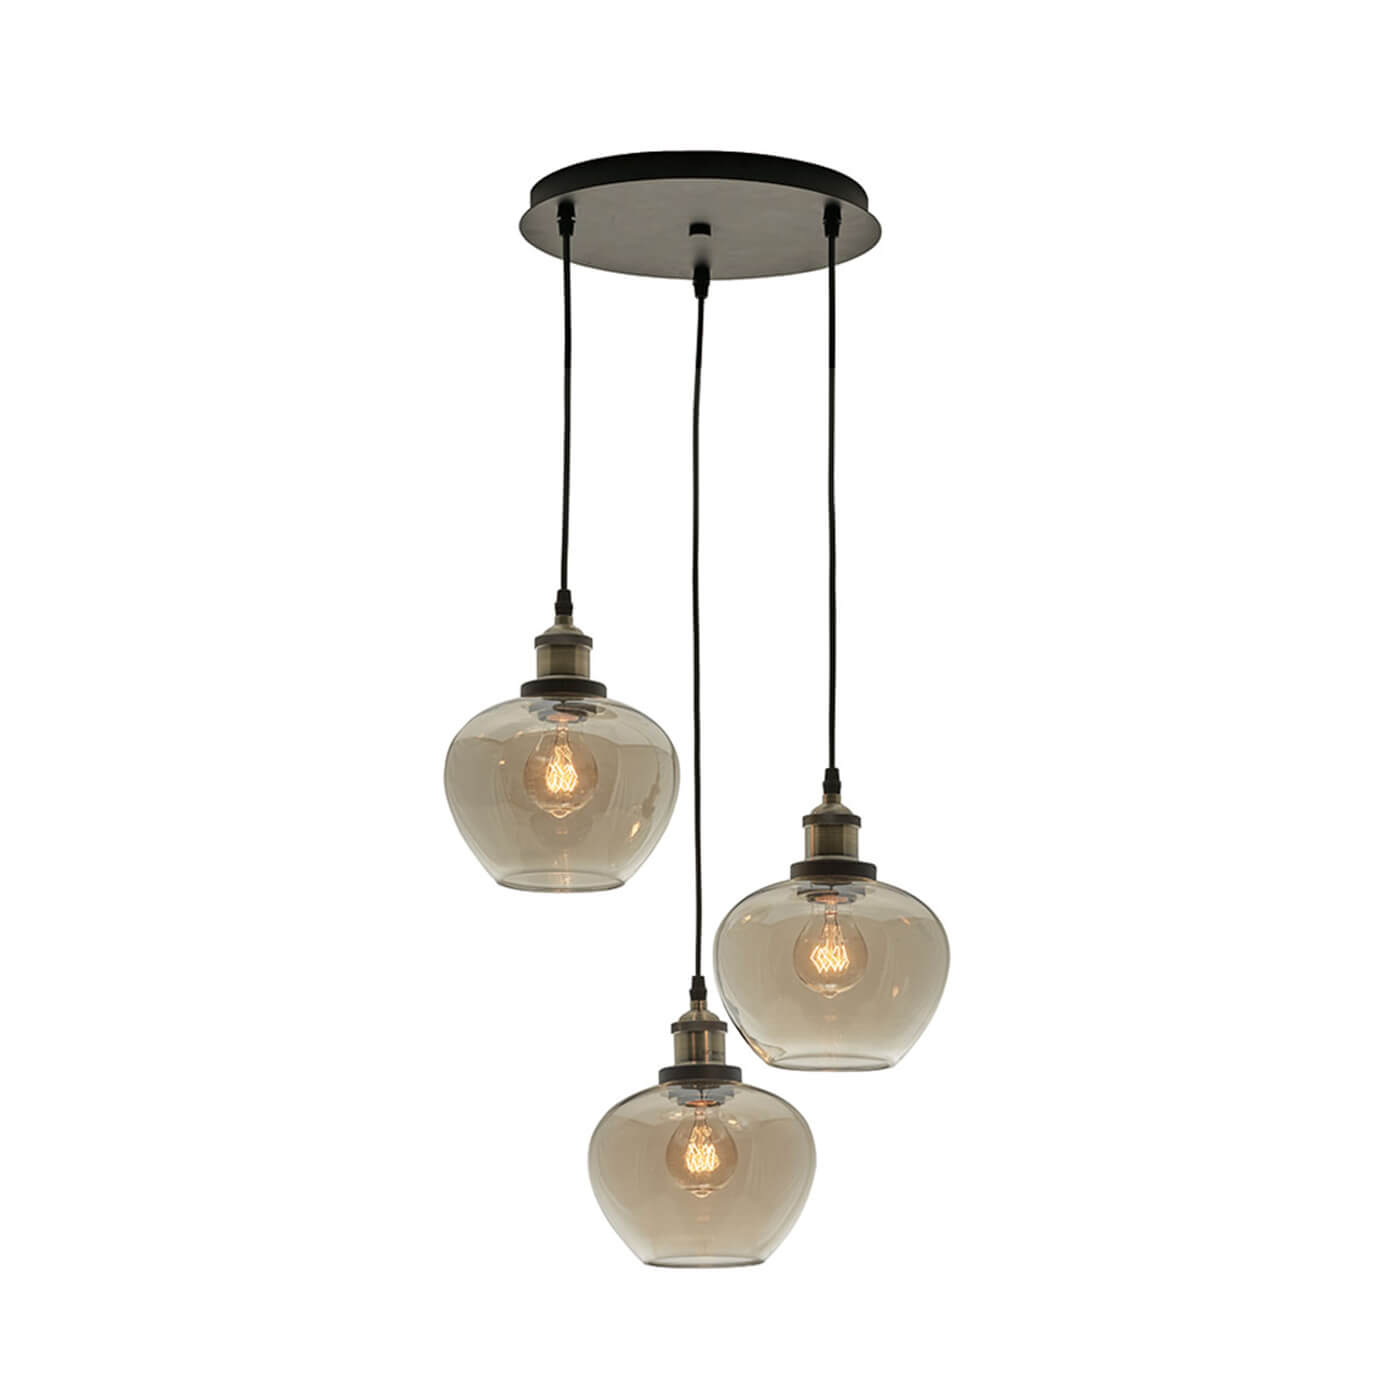 Cauti o lampa suspendata neagra JONAS S3S cu abajur ambrat, design modern, elegant, pentru living, dining sau dormitor din colectia de lustre si candelabre Domicilio?